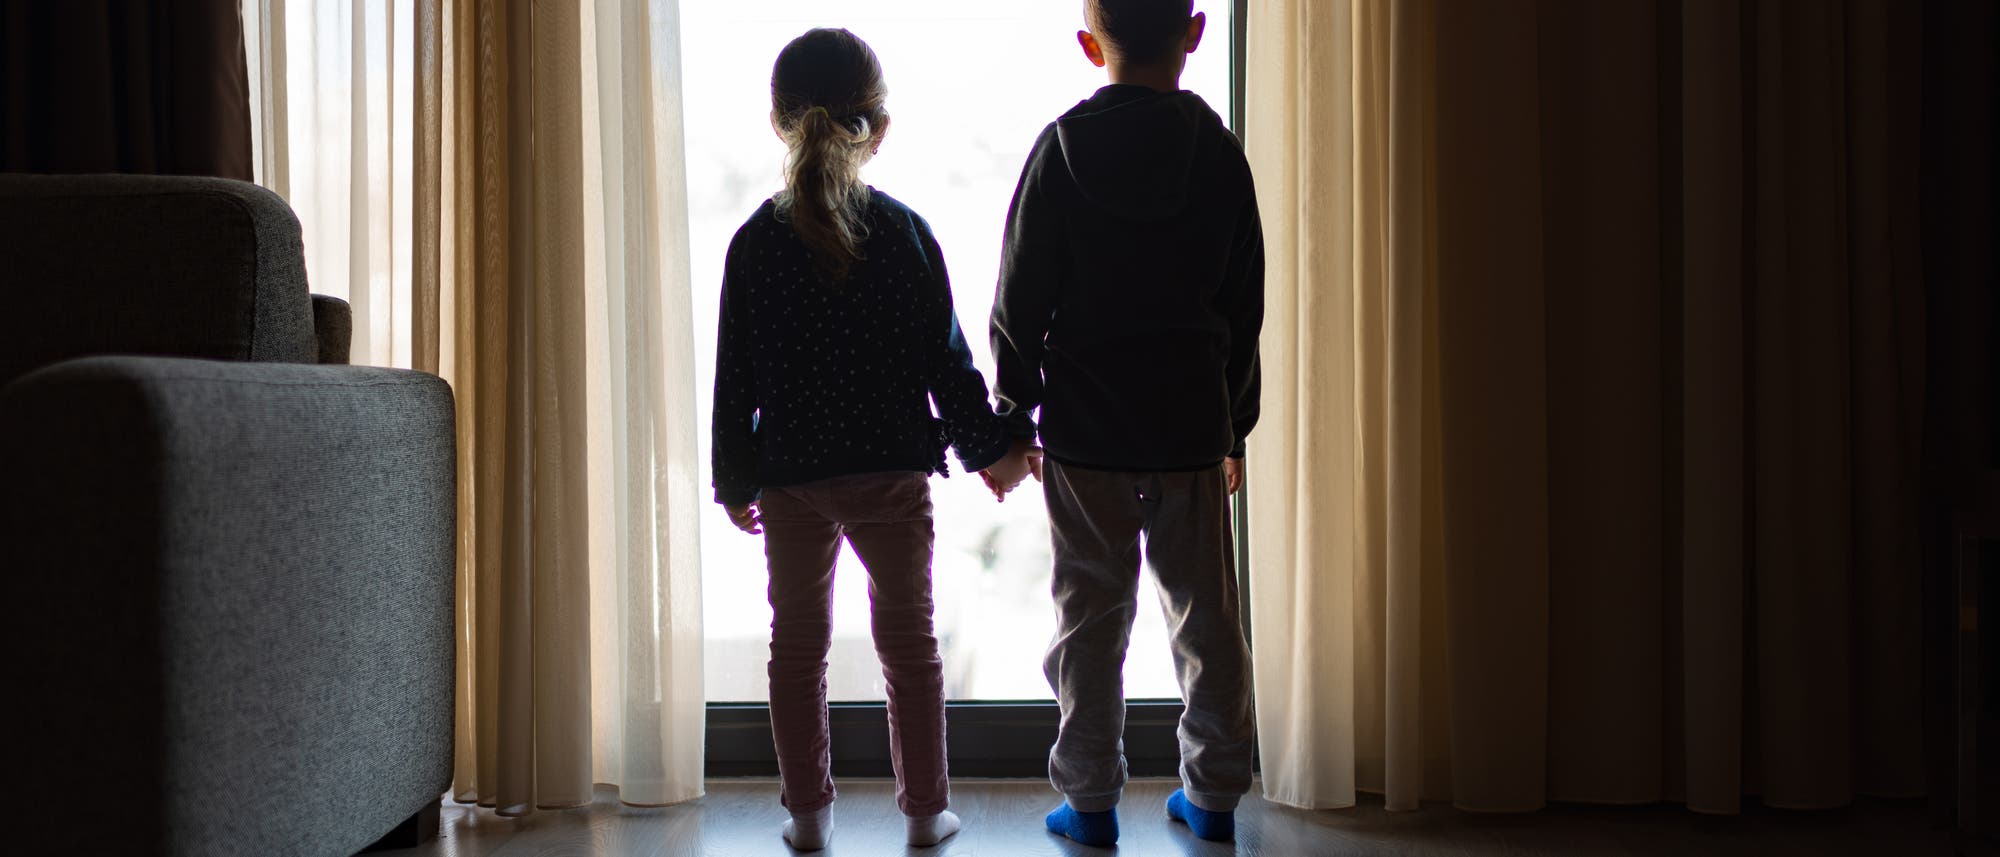 Mädchen und Junge im Gegenlicht vor einer gläsernen Tür